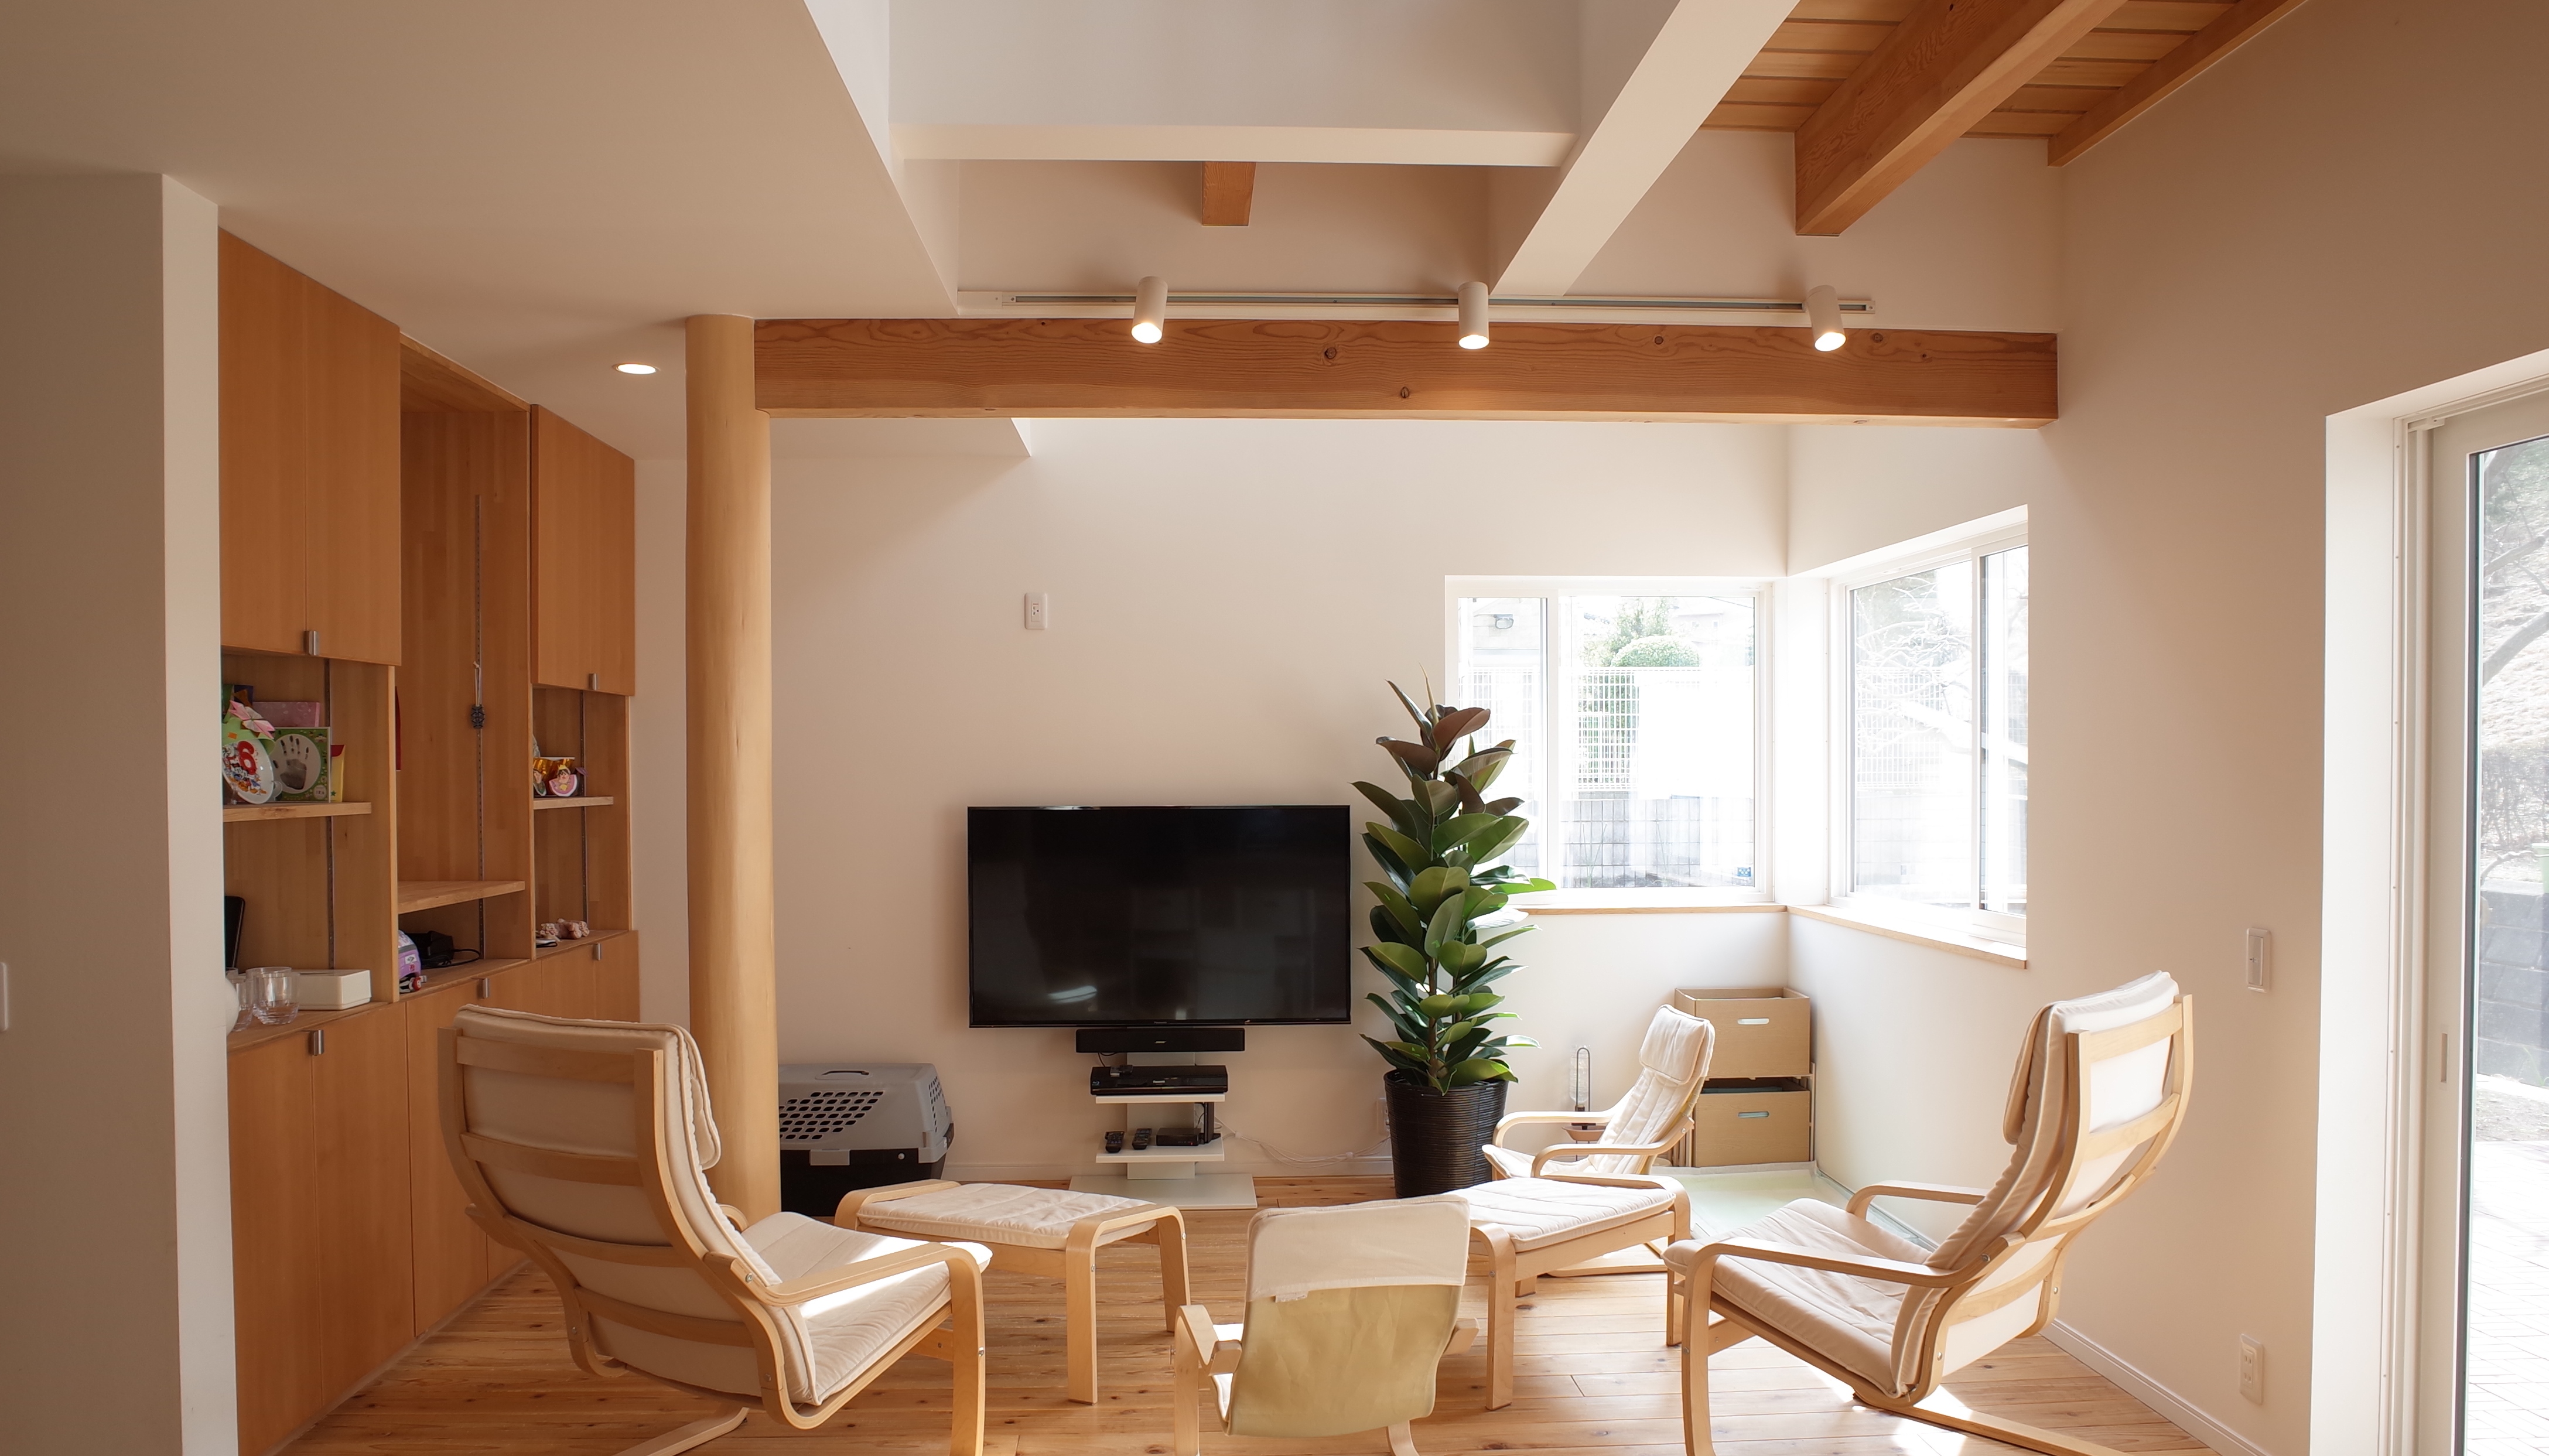 自然素材でリノベーションした横浜の家リビング